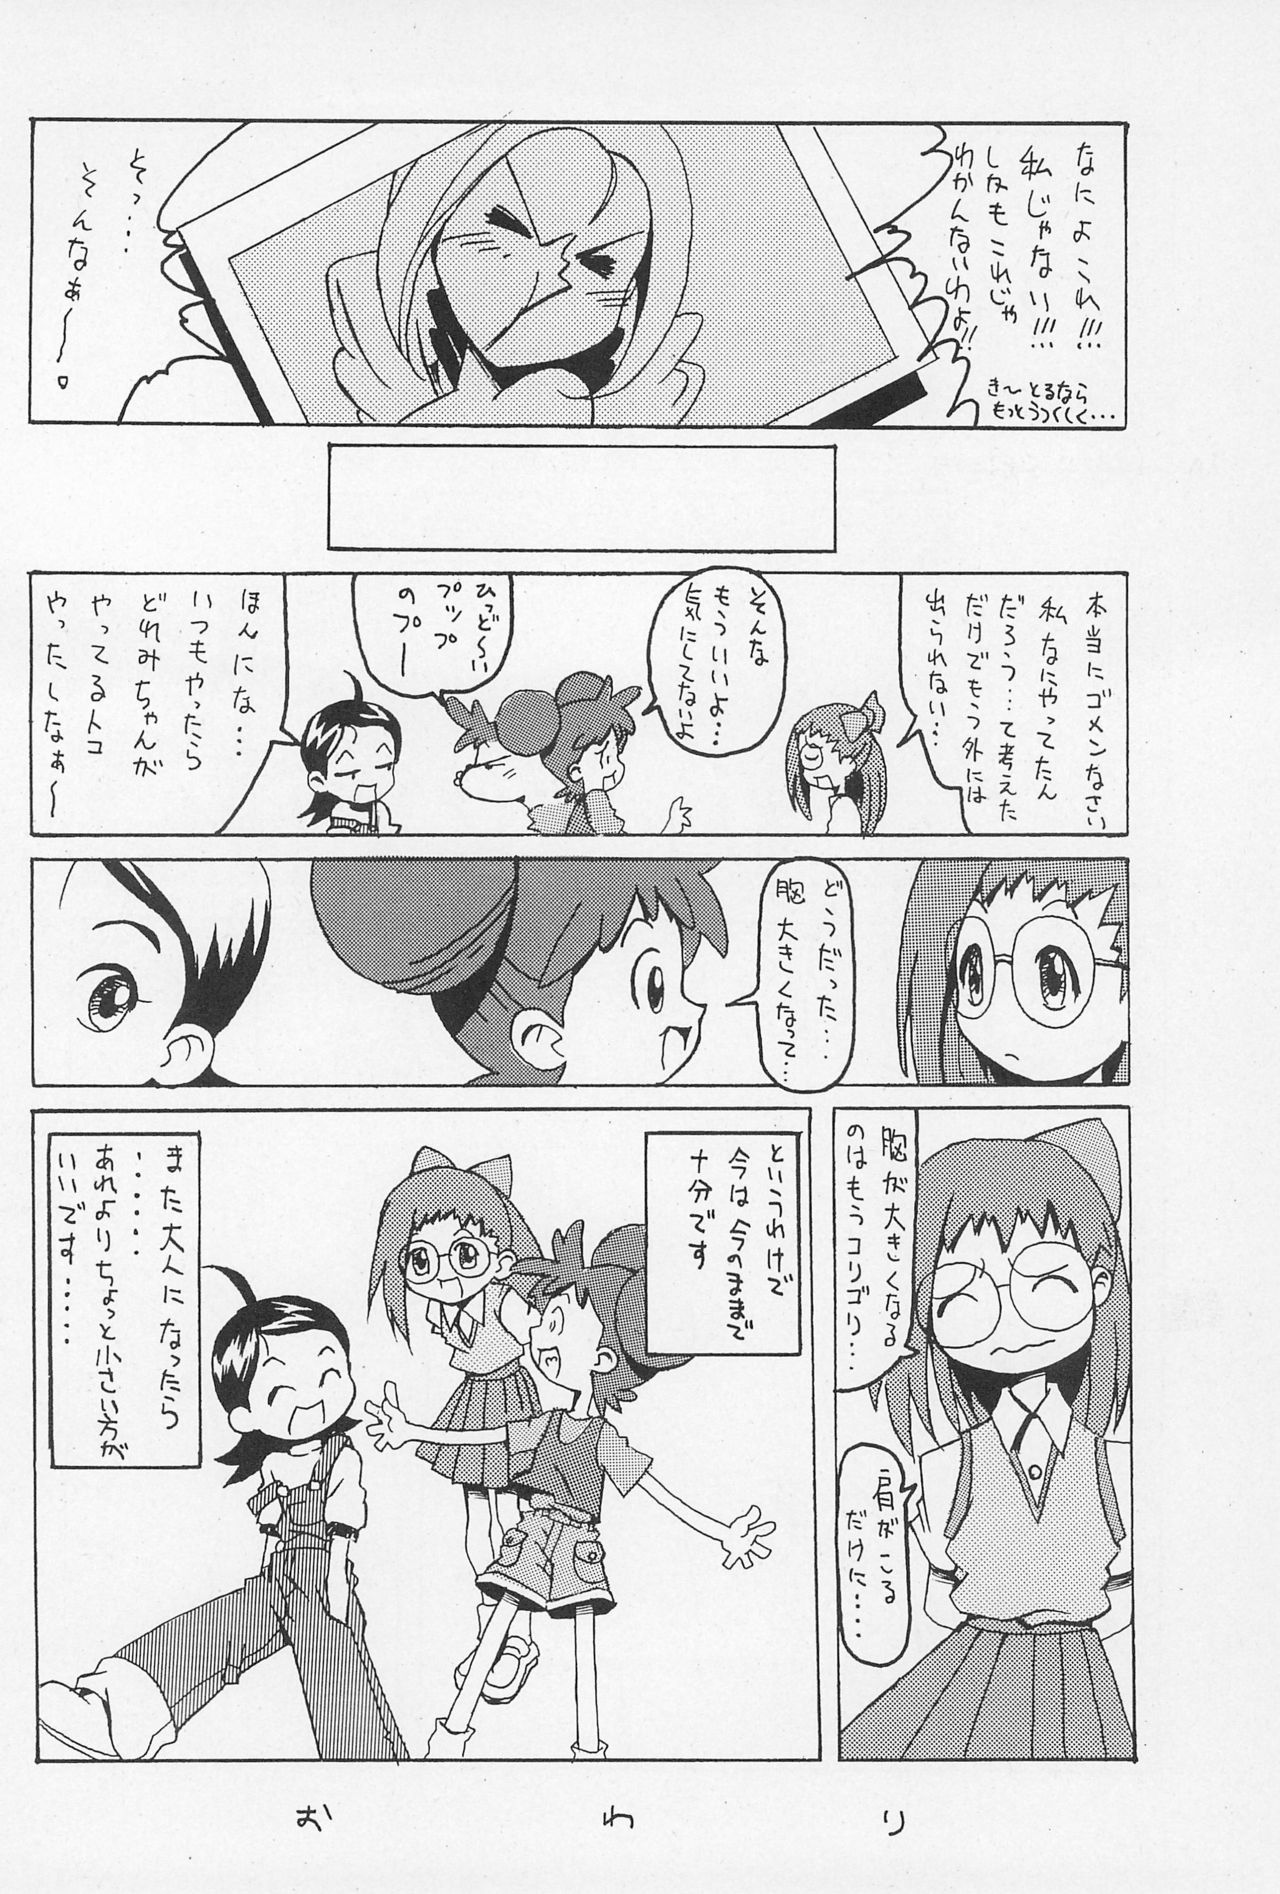 (CR25) [Nekketsu Kouenji Housoukyoku, KENIX (Katori Youichi, Ninnin!)] Doremi Fa So La Si Do (Ojamajo Doremi) page 18 full